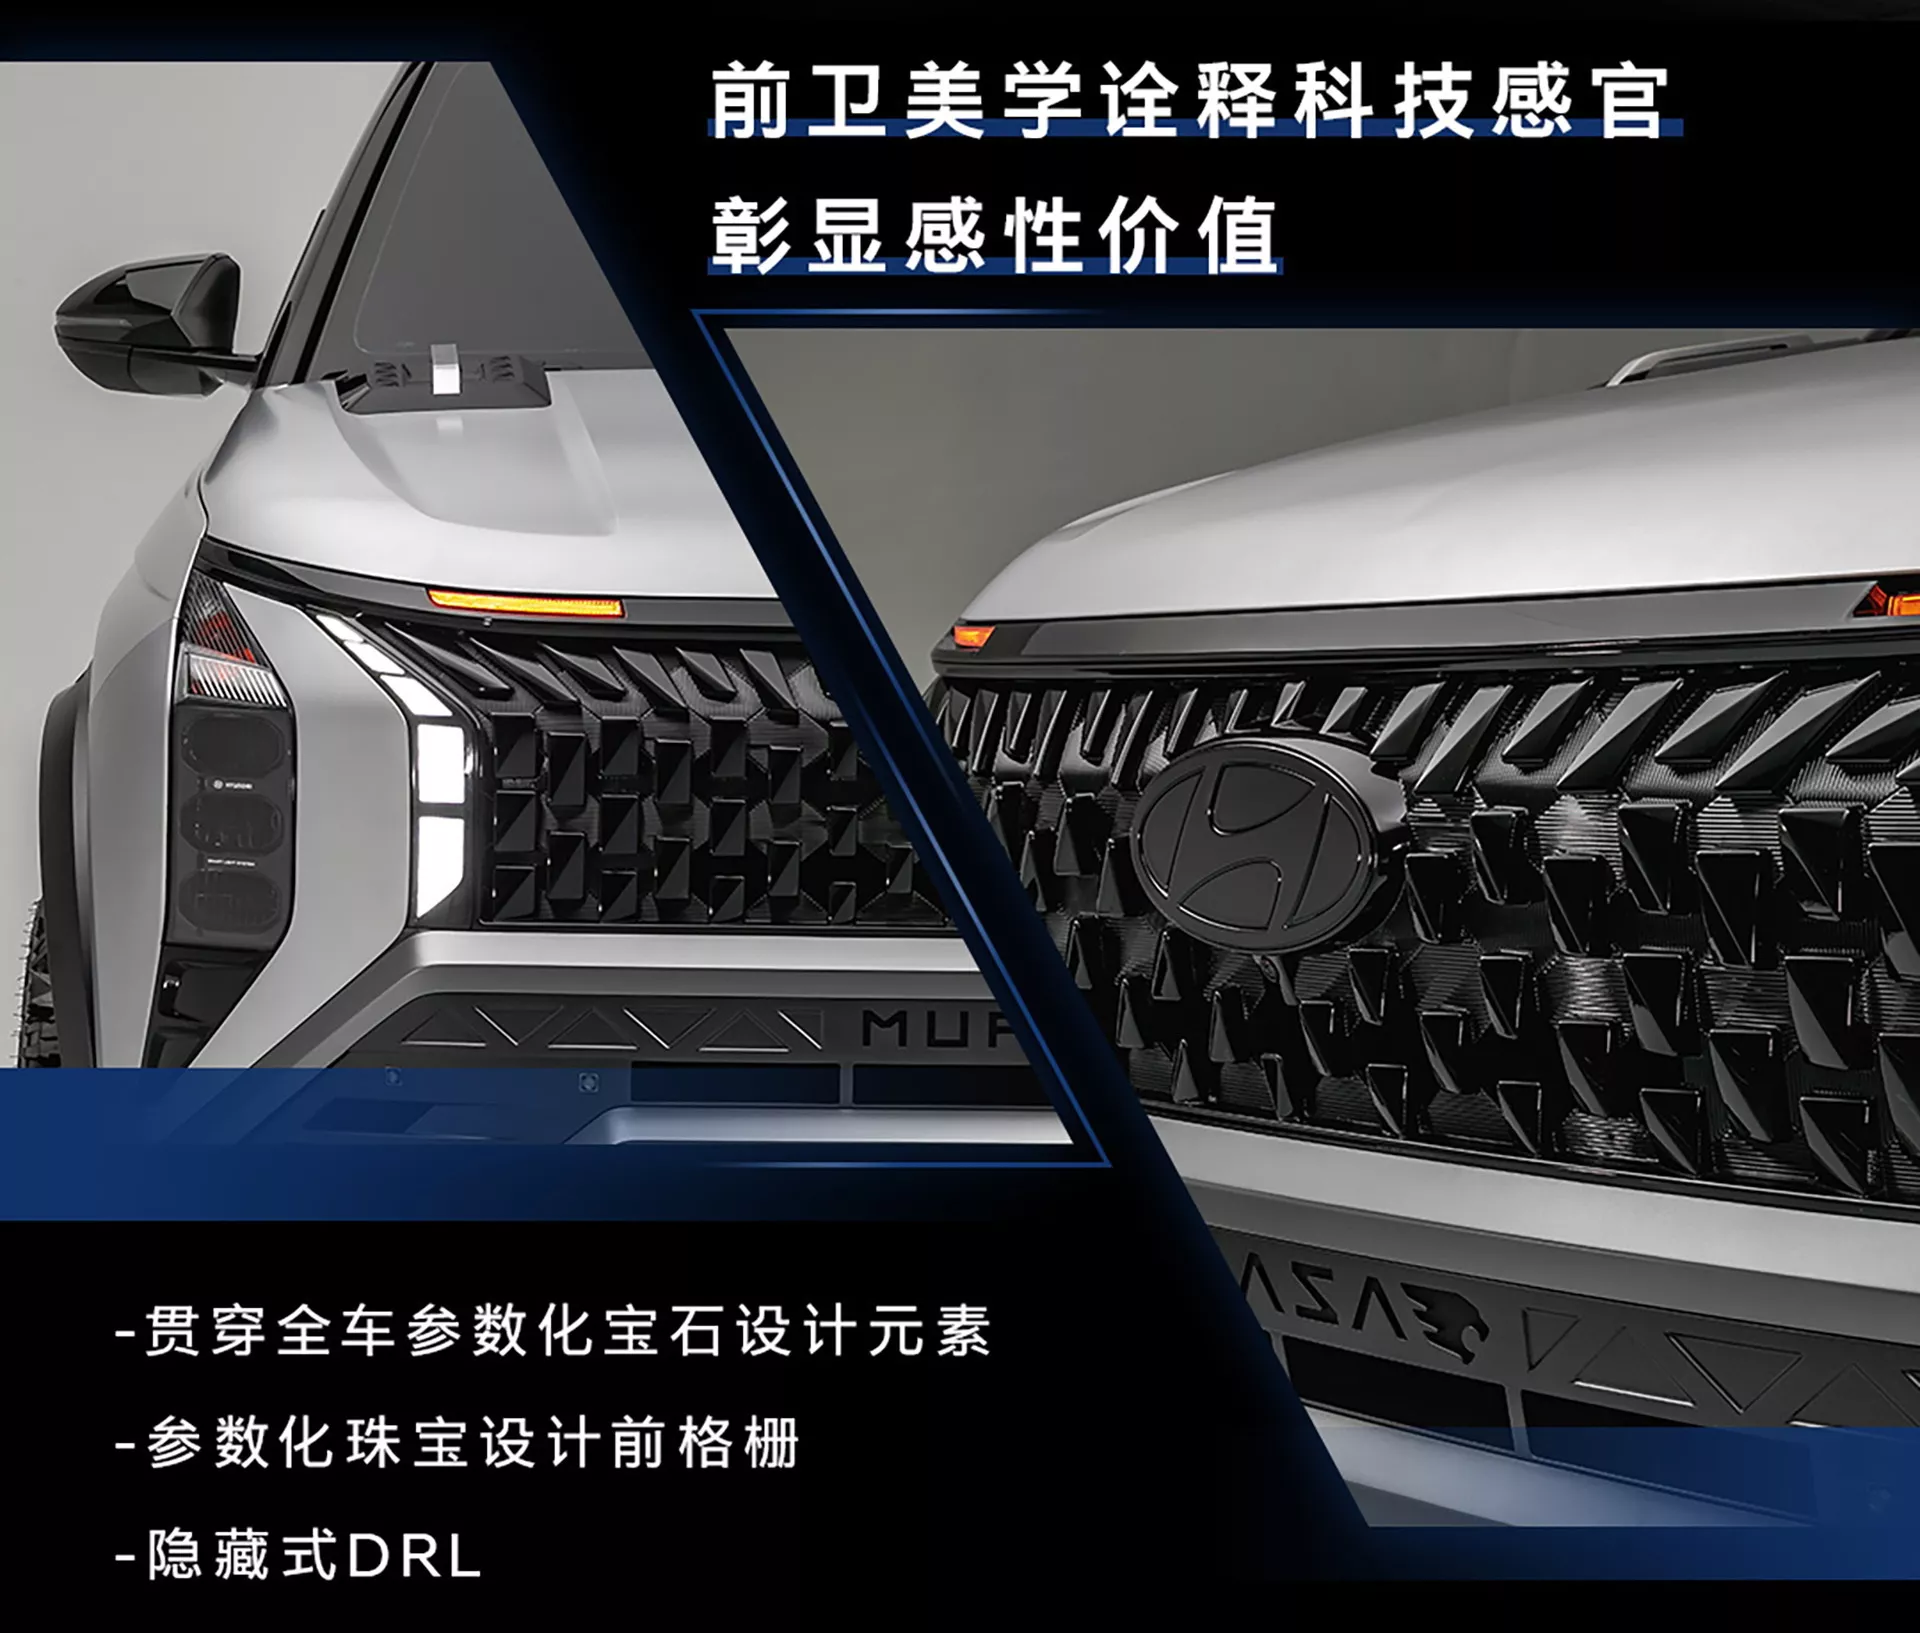 هيونداي تدشن سيارة موفاسا SUV الجديدة كلياً للدروب الوعرة 11